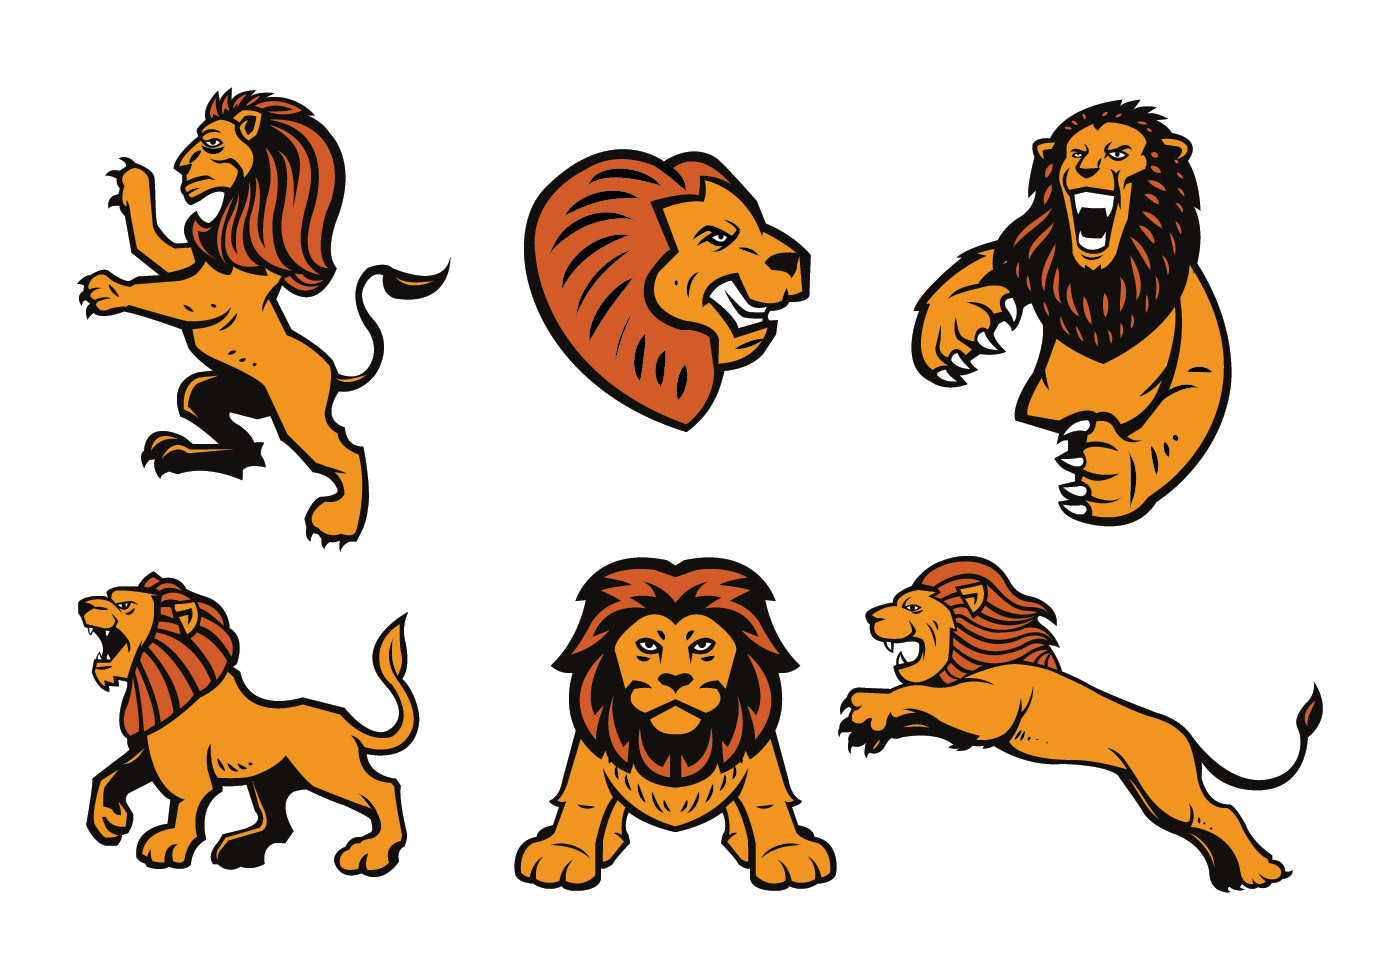 Download Free Lions Logo Vector Set - Download Free Vectors, Clipart Graphics & Vector Art